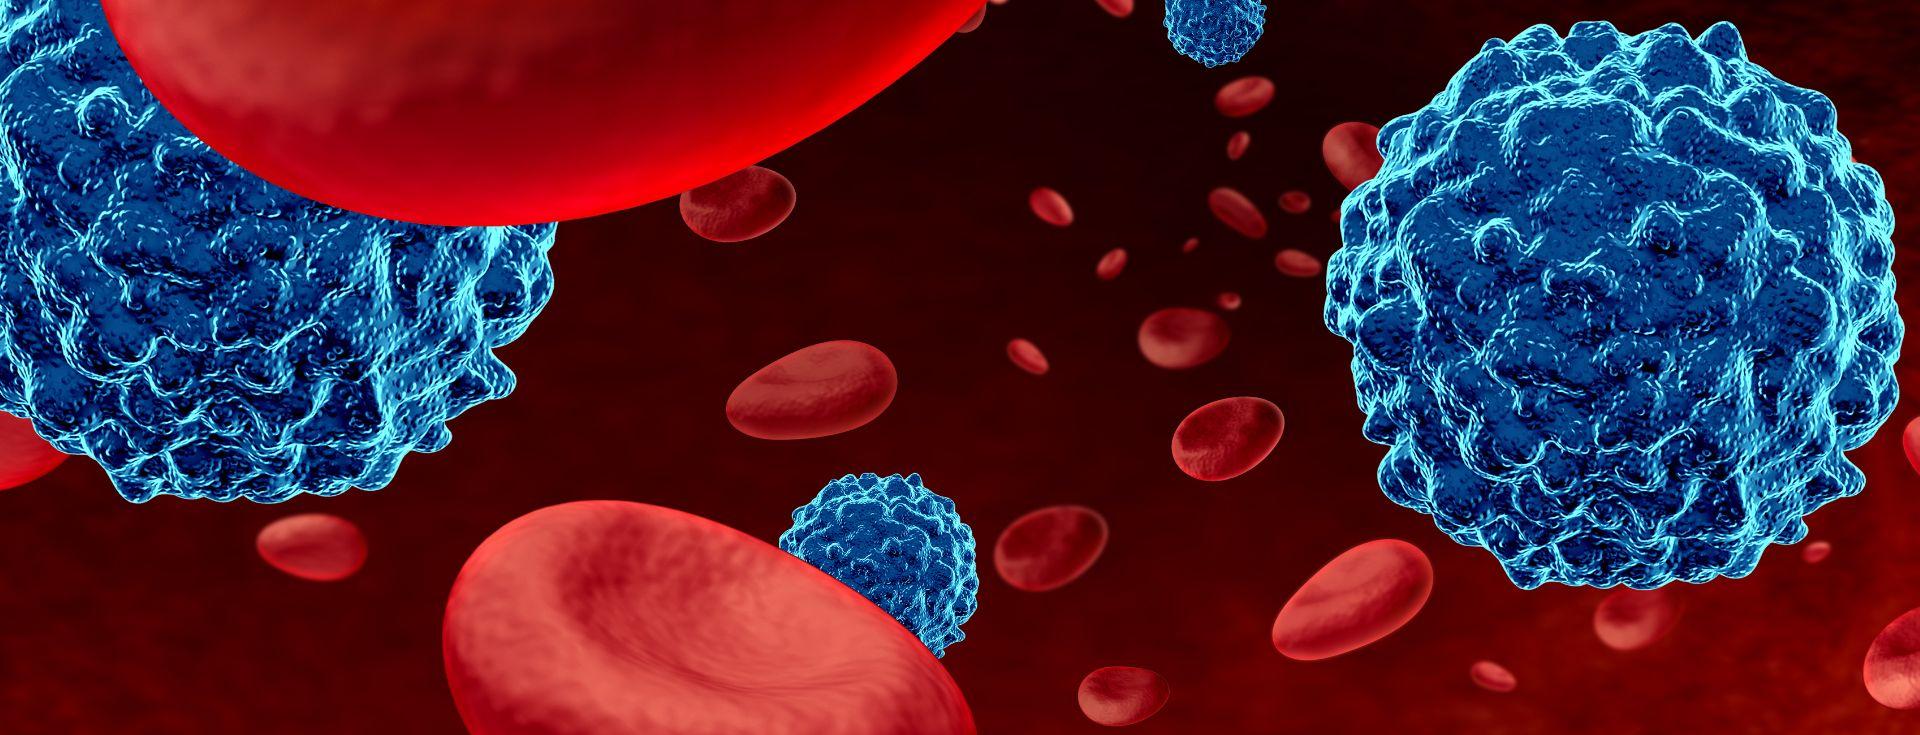 Ilustração células linfoma, arredondadas, azuis e vermelhas 